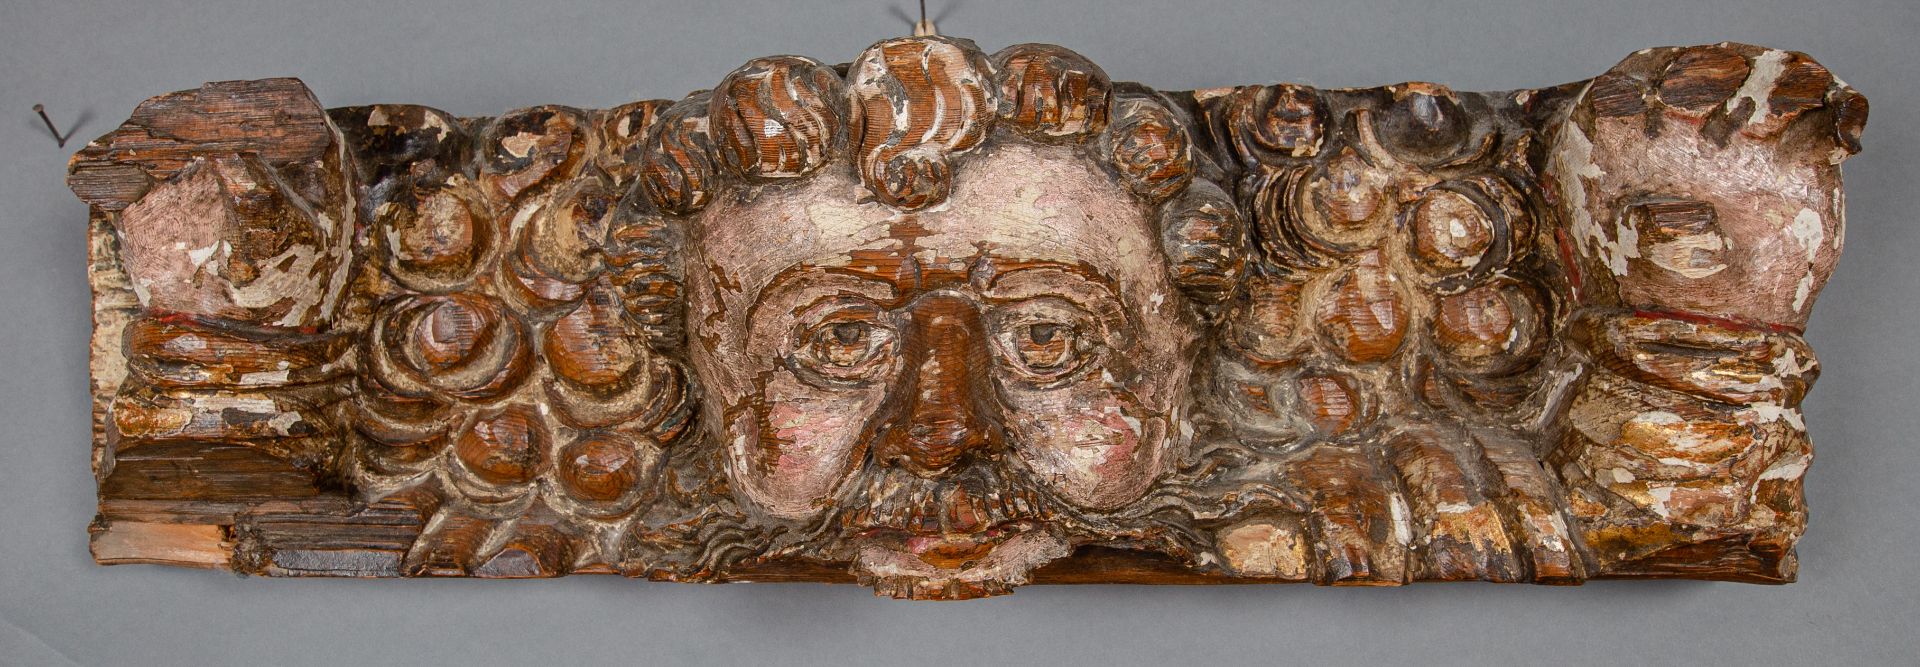 Gottvater, Fragment aus einem Schnitzbild, 18. Jh.